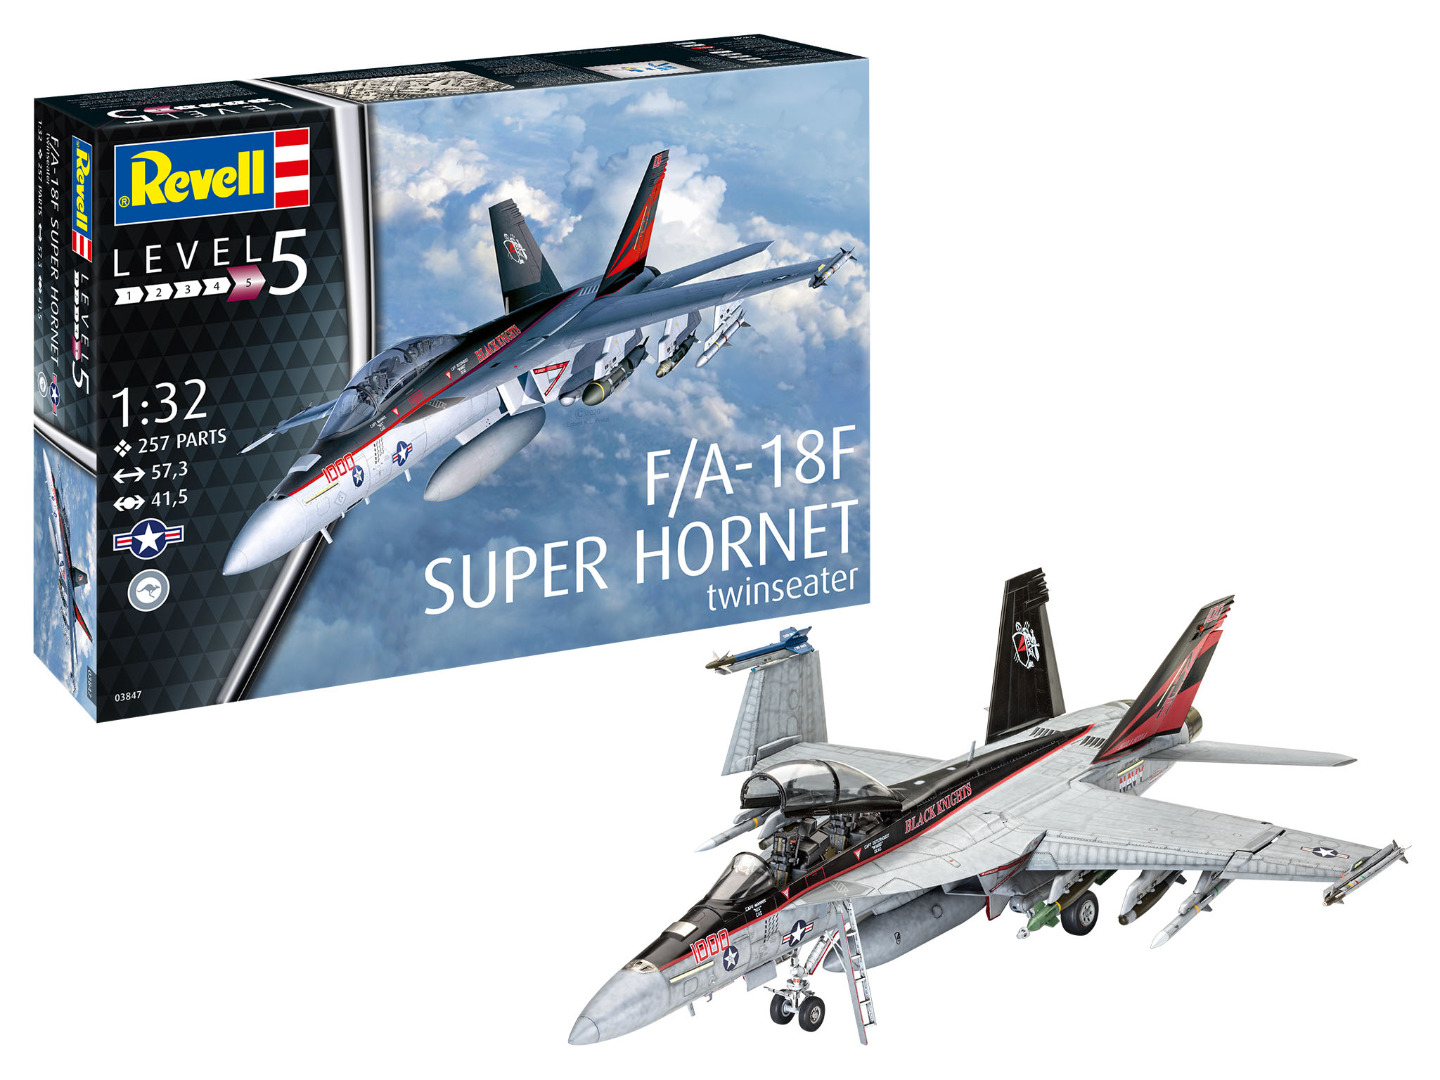 Revell Model Kit F/A-18F Super Hornet Scale 1:32